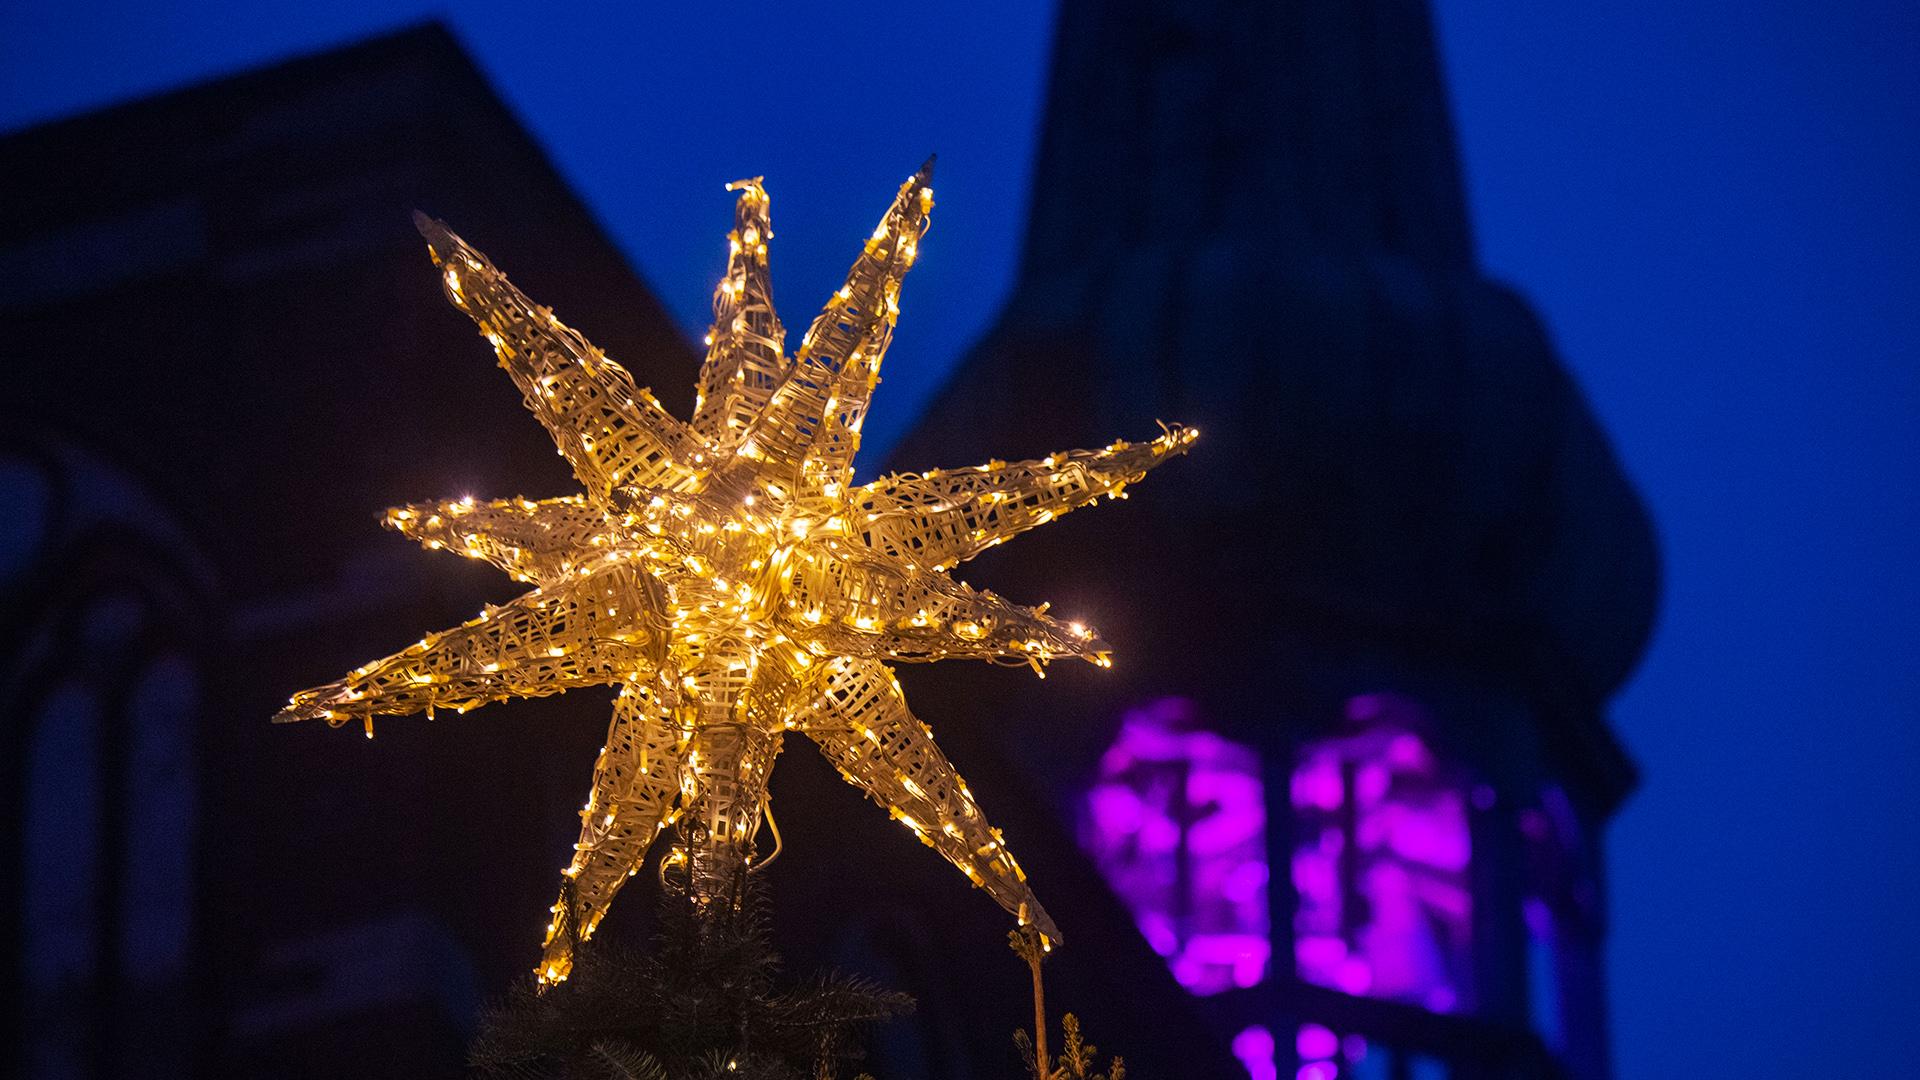 Ein Weihnachtsstern schmückt den Weihnachtsbaum auf dem Alten Markt vor dem Rathaus in Stralsund )Mecklenburg-Vorpommern). | picture alliance/dpa